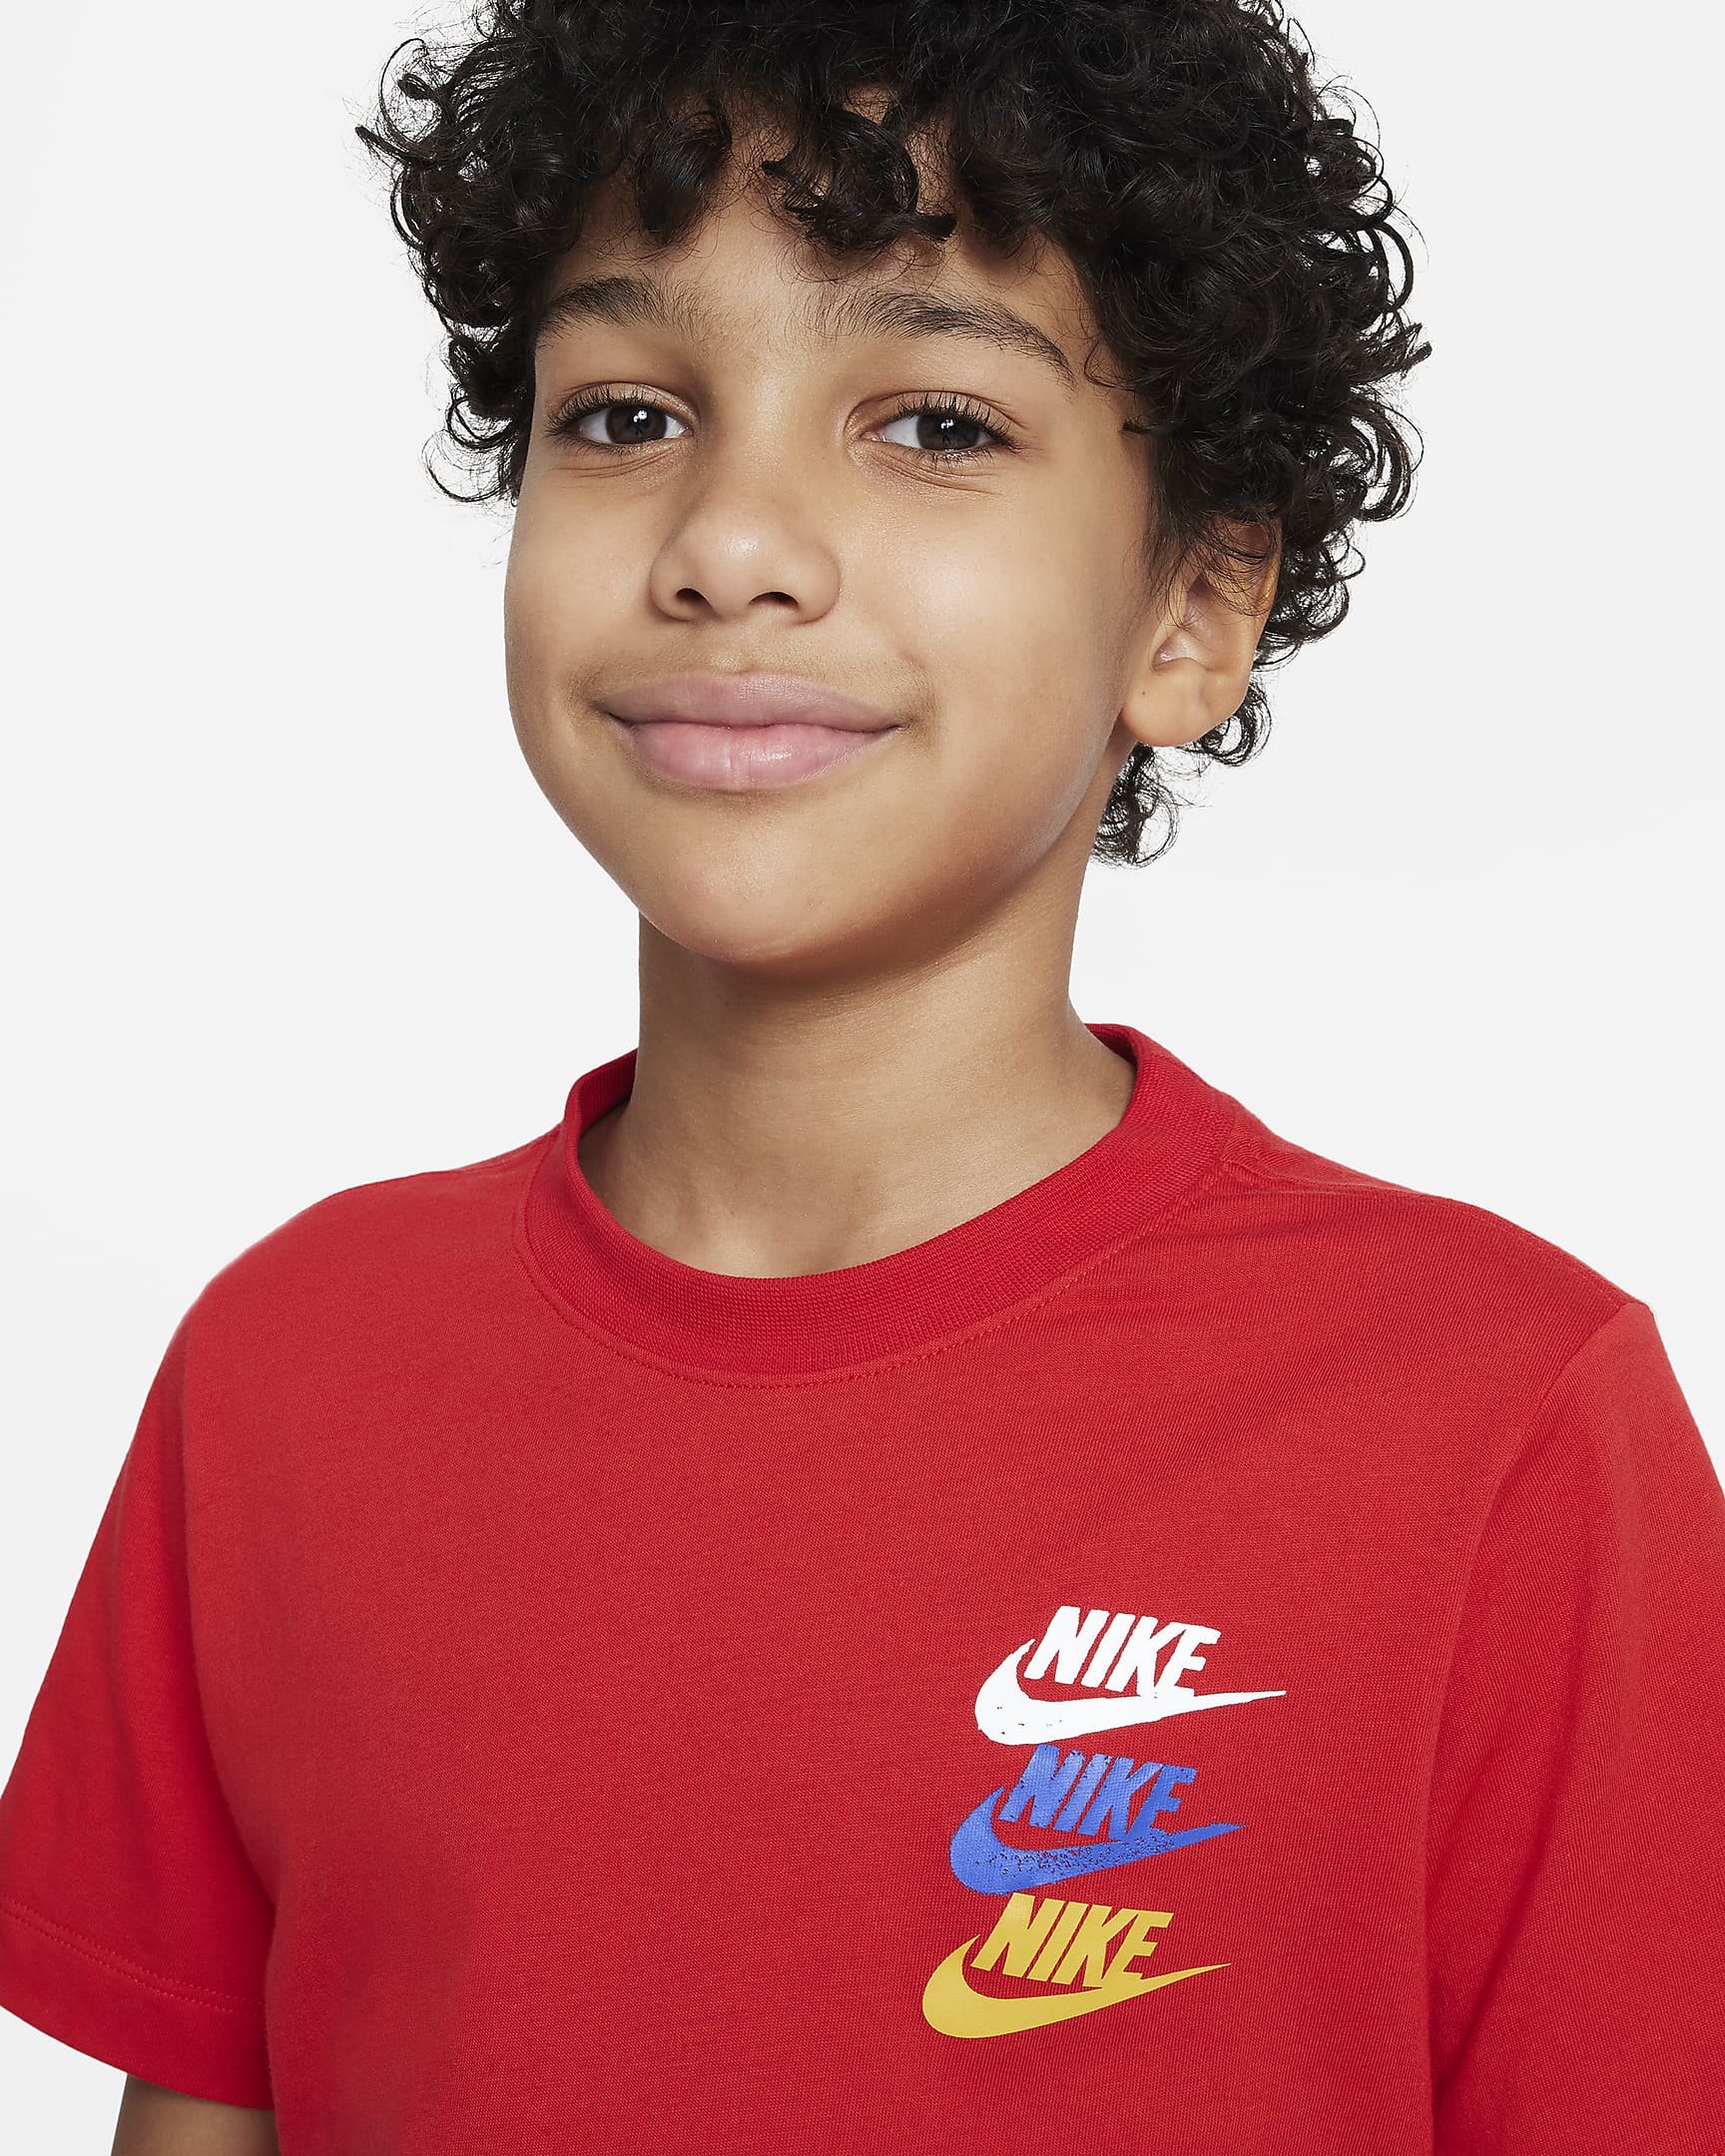 Nike Sportswear Standard Issue Older Kids' (Boys') T-shirt. Nike HR